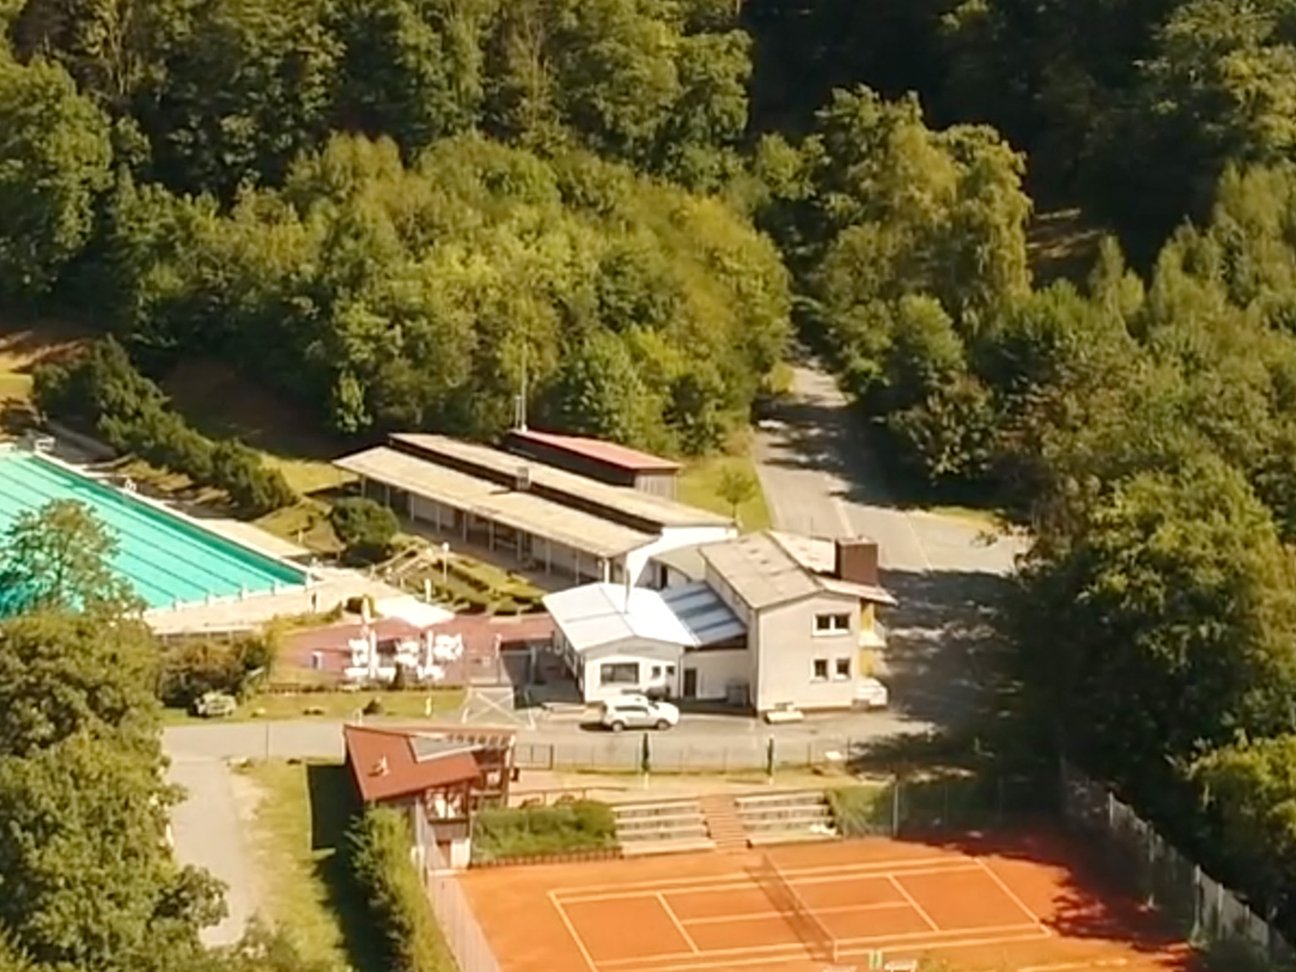 terassencamping-schlierbach-tennisplatz